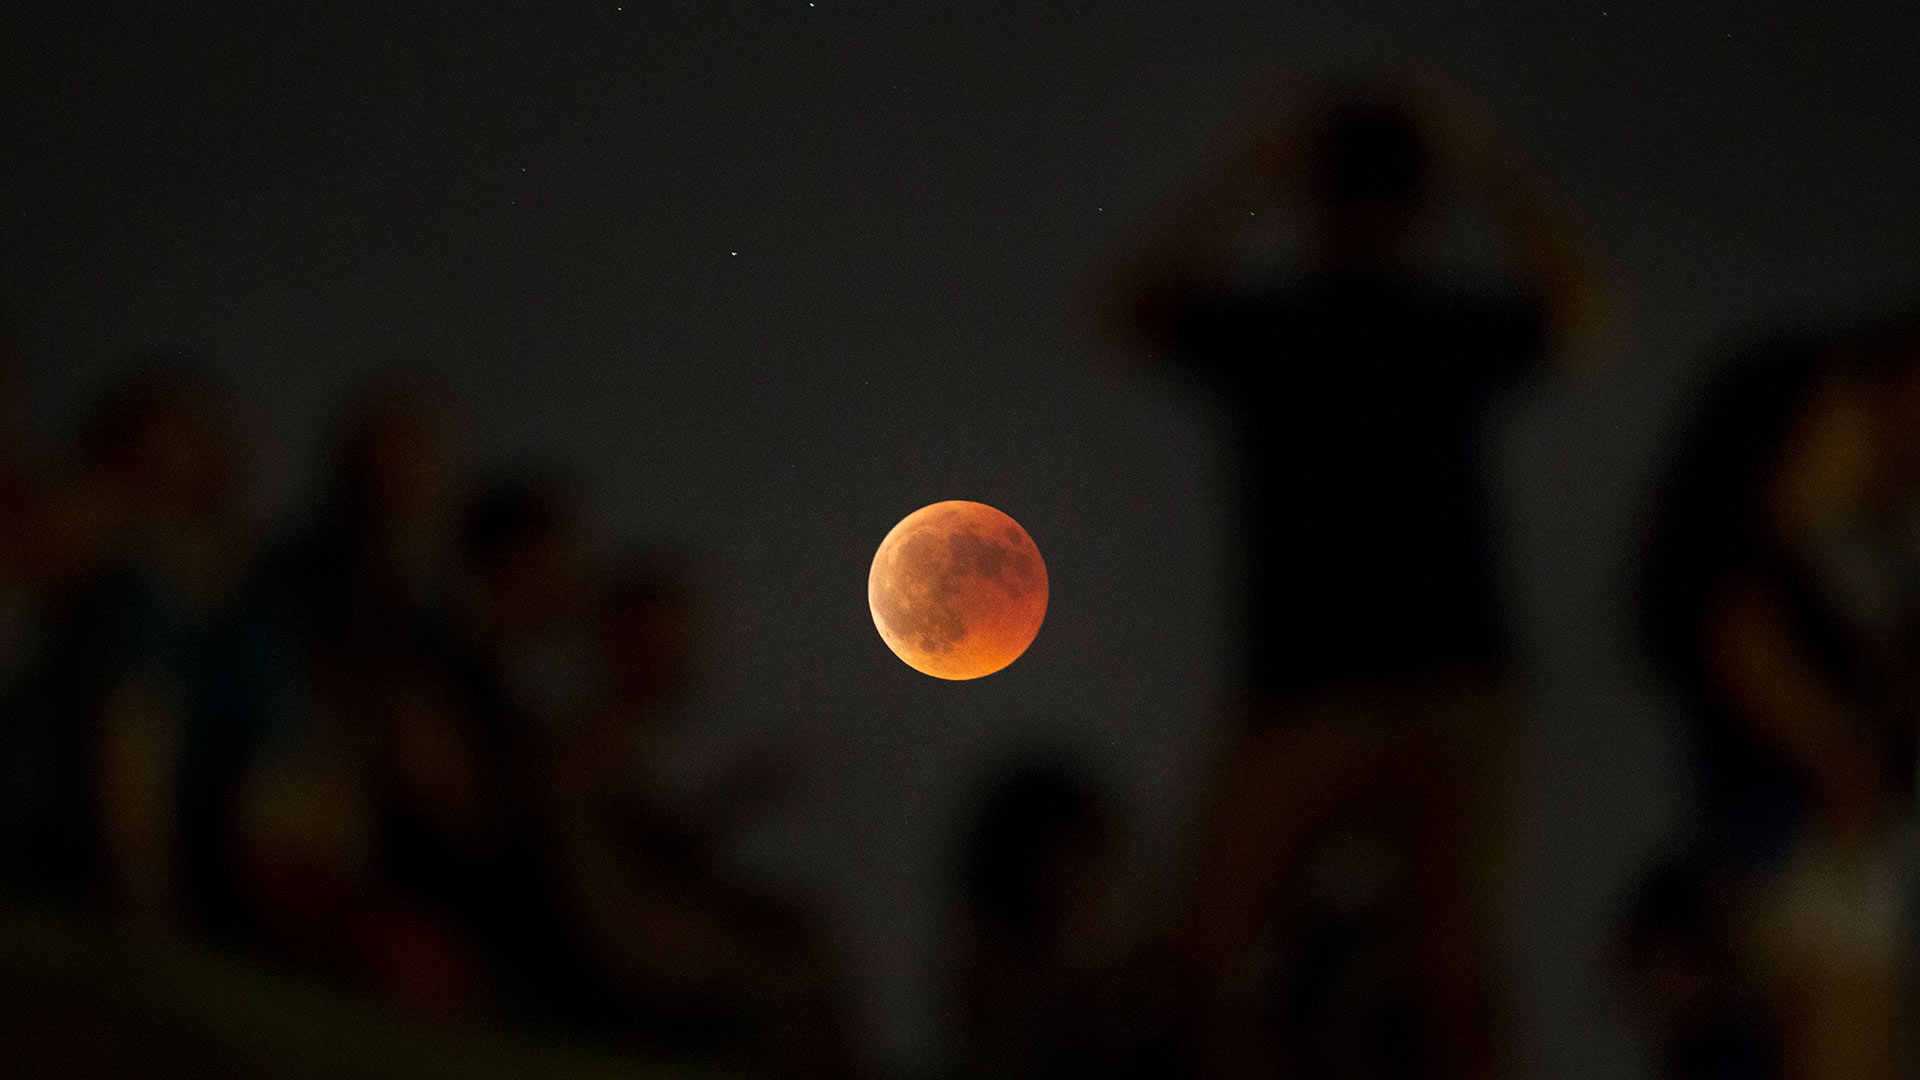 El evento astronómico del verano: lo que tienes que saber sobre el eclipse parcial de luna de esta noche